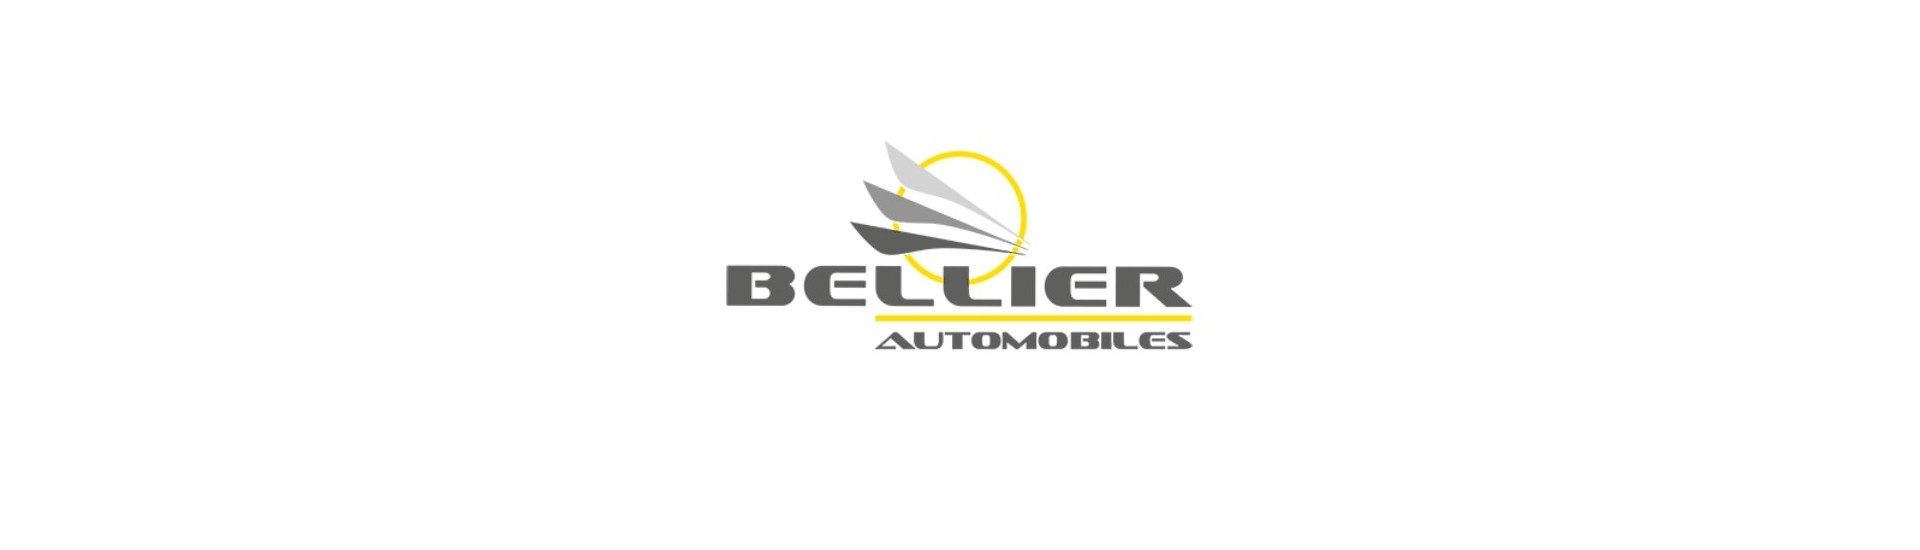 Hiljainen kolmioblokki paras hinta auto ilman lupaa Bellier